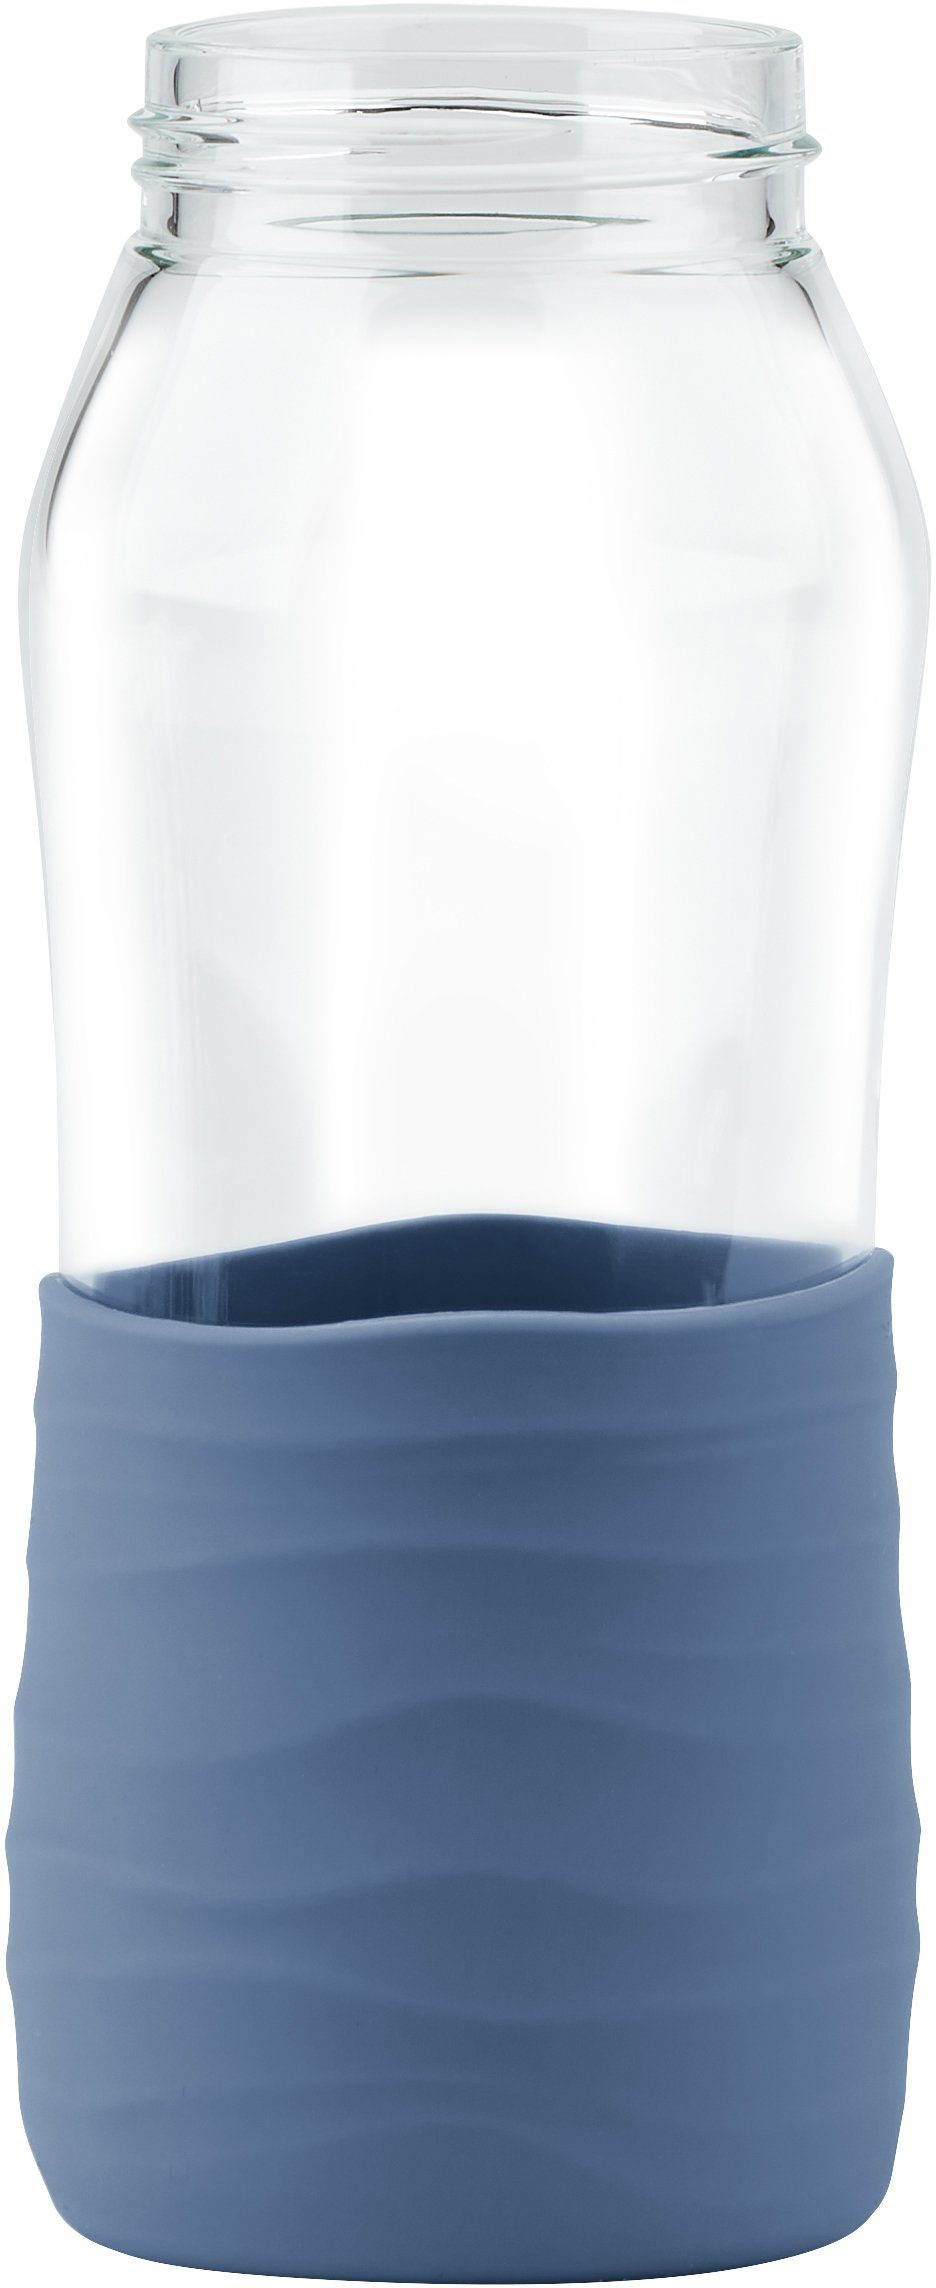 Drink2Go, ml Schraubverschluss, dicht/hygienisch/rein, Emsa Trinkflasche Blau Aqua 500 Silikonmanschette,